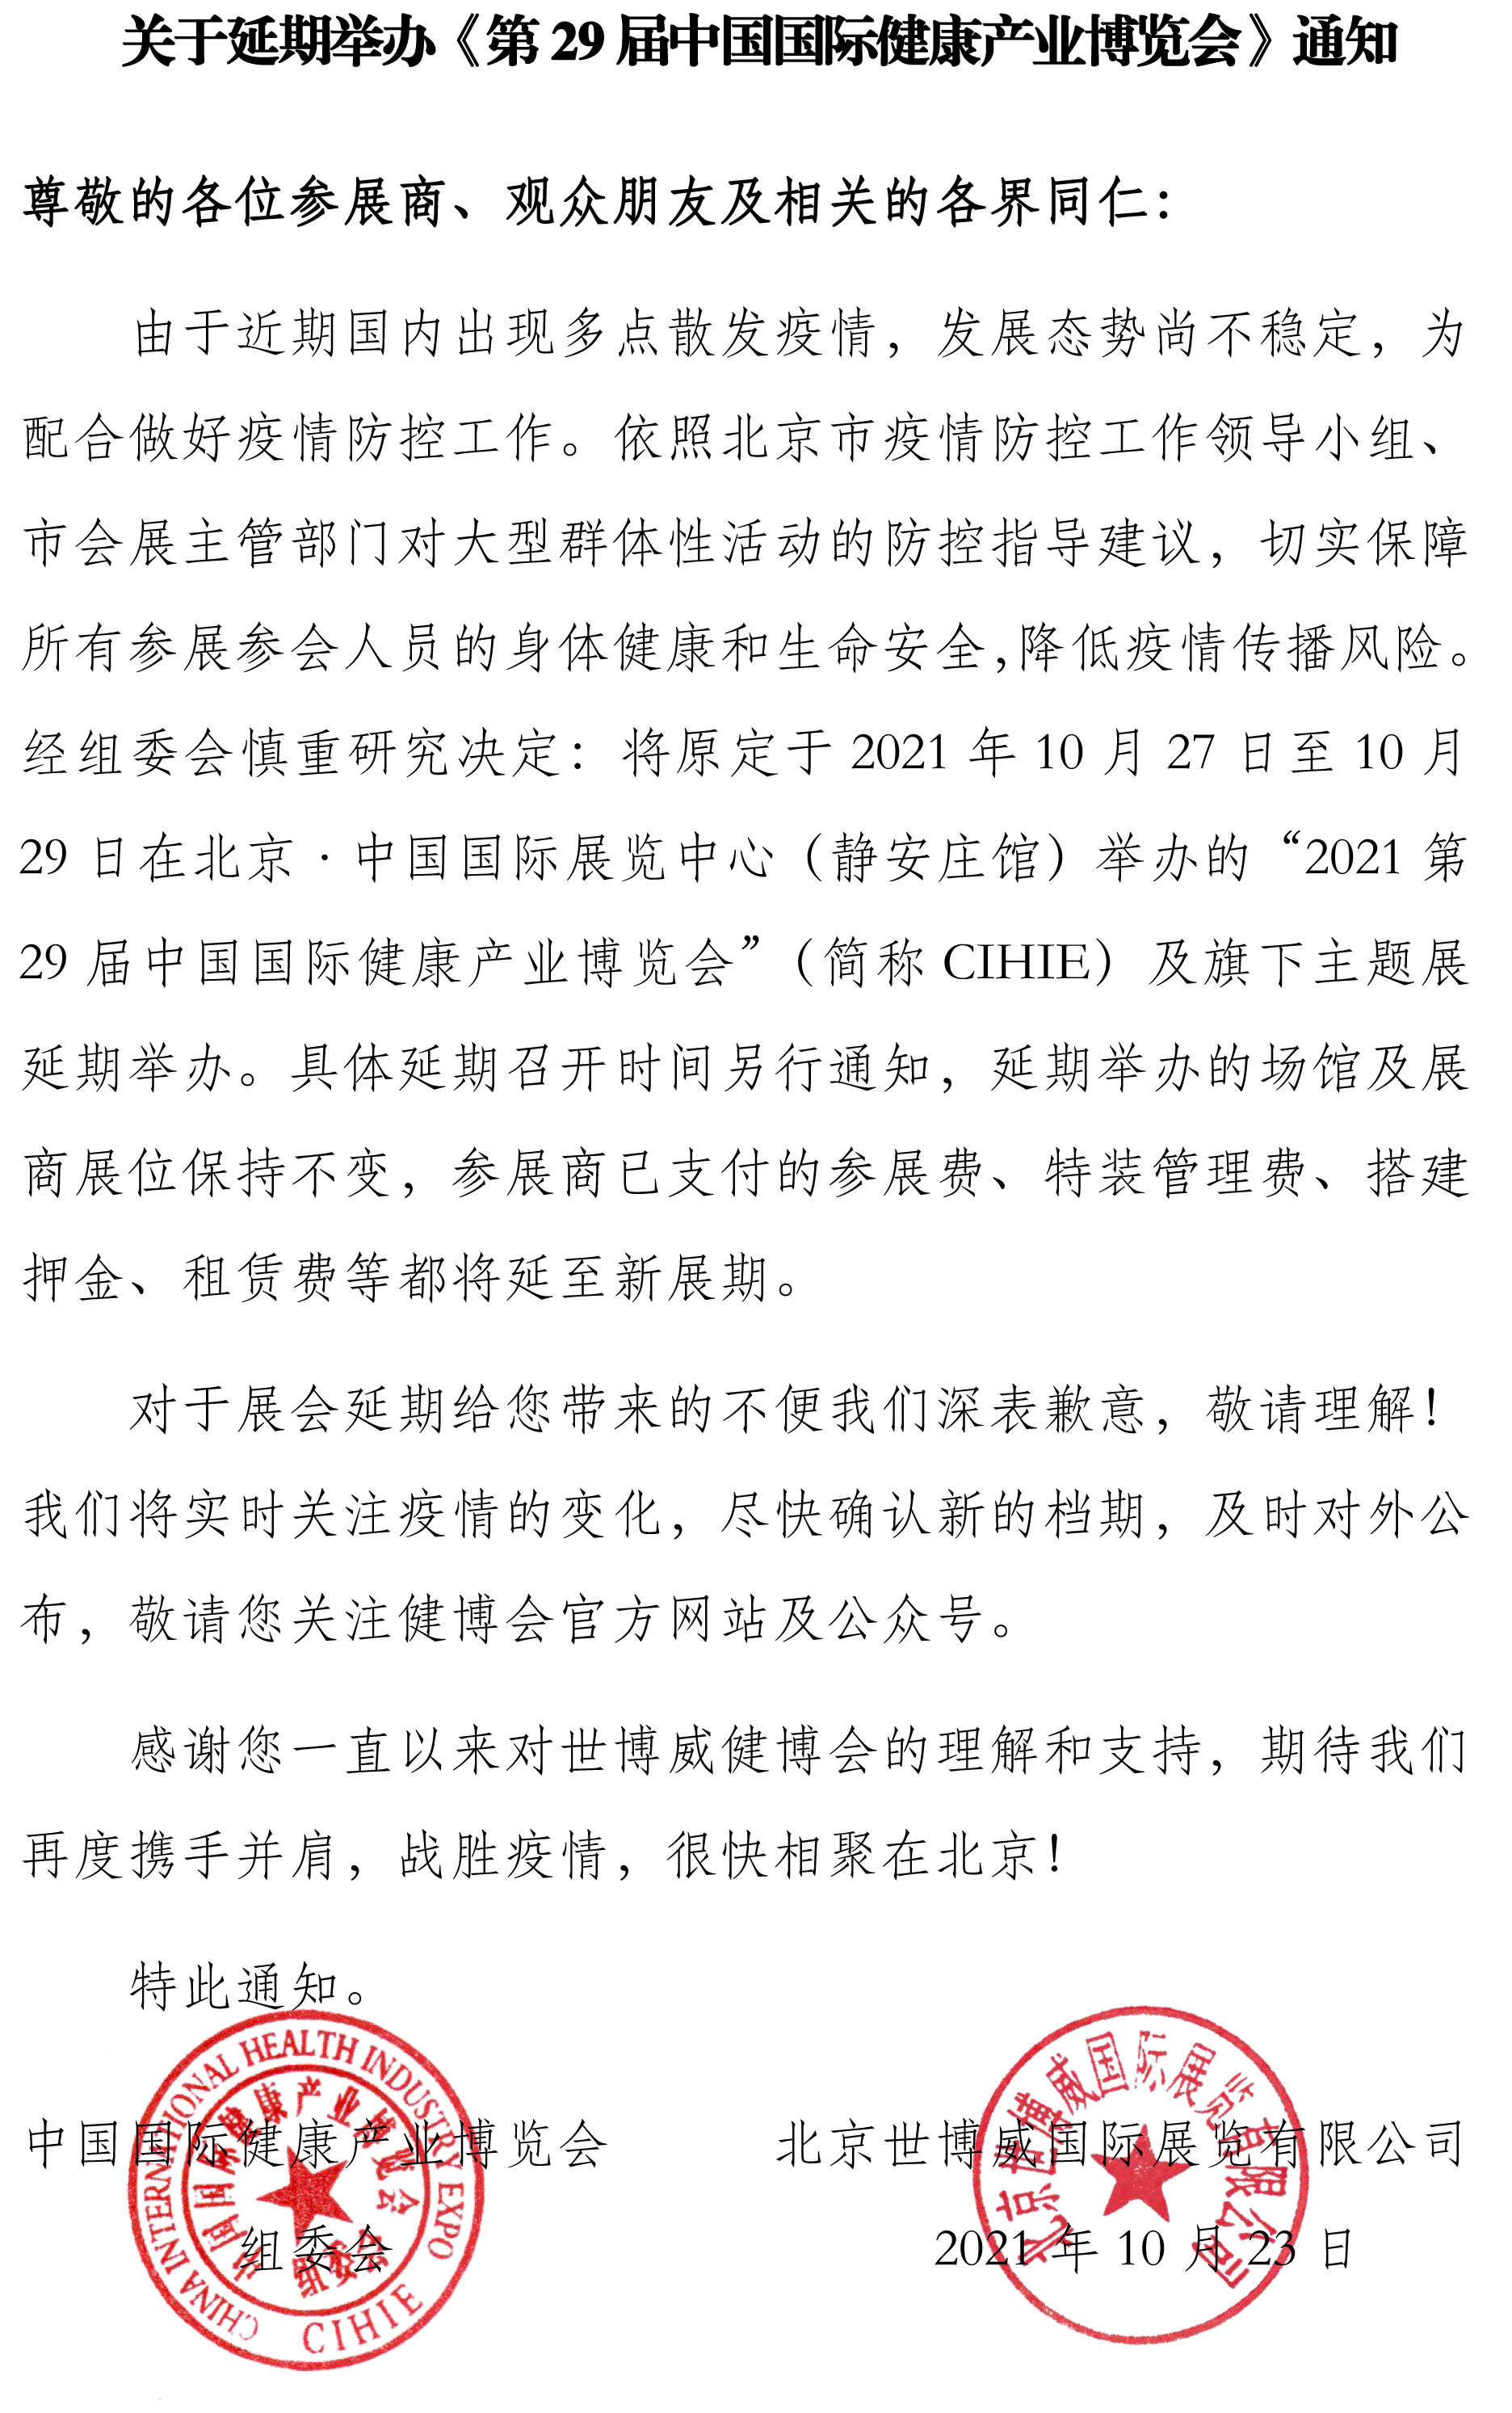 【延期通知】CIHIE 第29屆中國國際健康產業博覽會延期舉辦